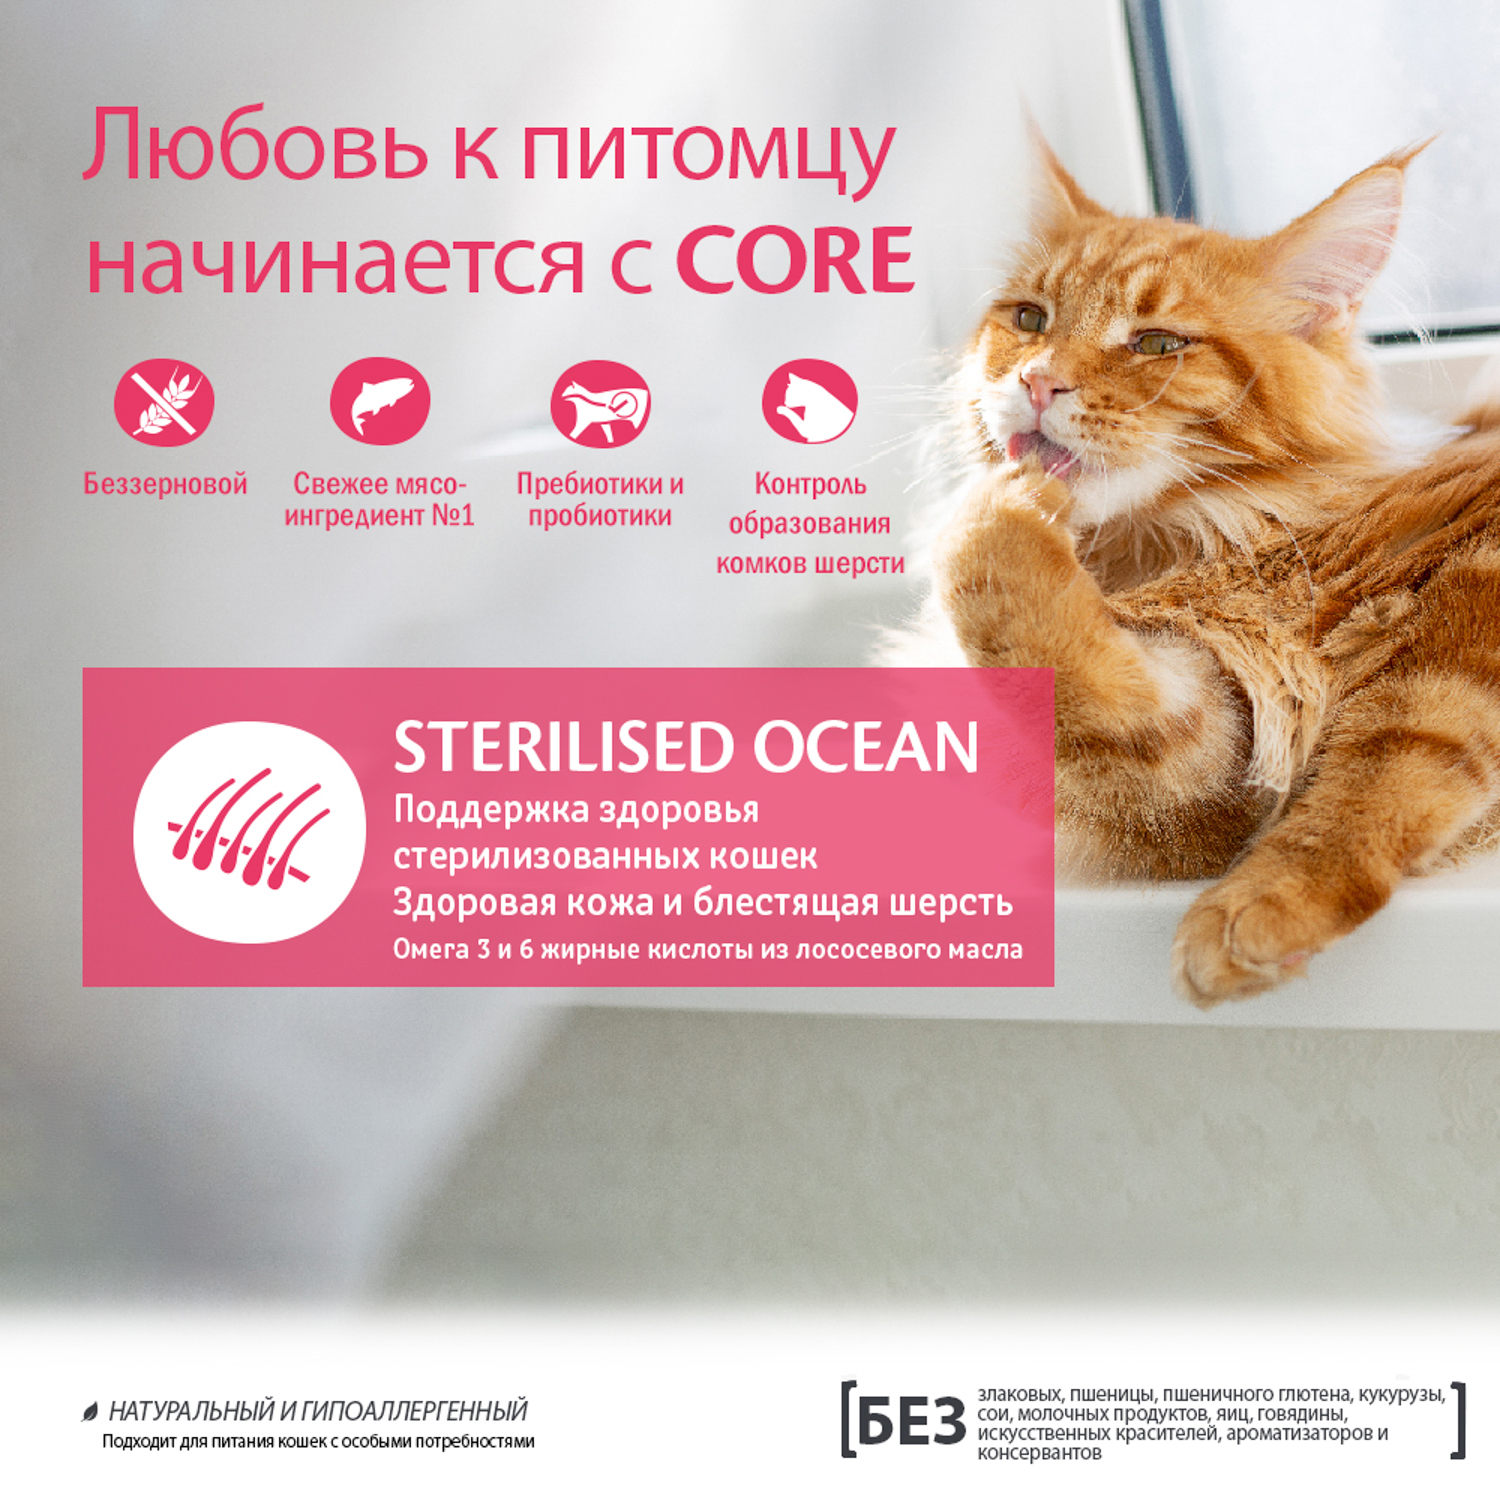 Сухой корм CORE для стерилизованных кошек и кастрированных котов, из лосося 1,75 кг